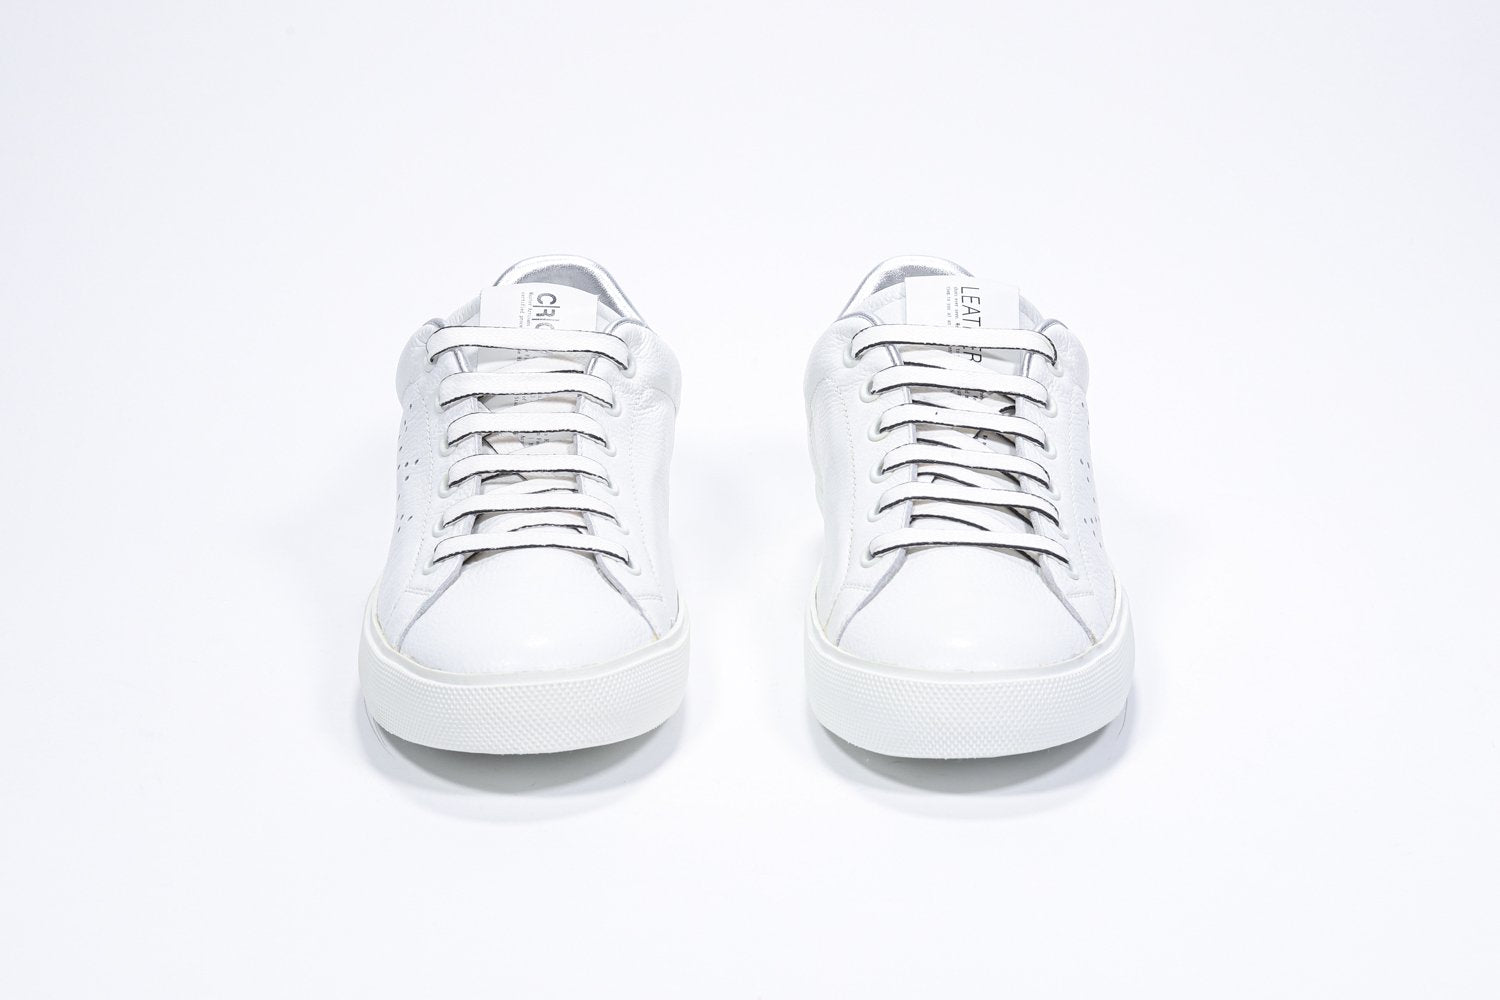 Vue de face de la chaussure blanche sneaker avec des détails argentés et le logo perforé de la couronne sur la tige. Tige en cuir et semelle en caoutchouc blanc.